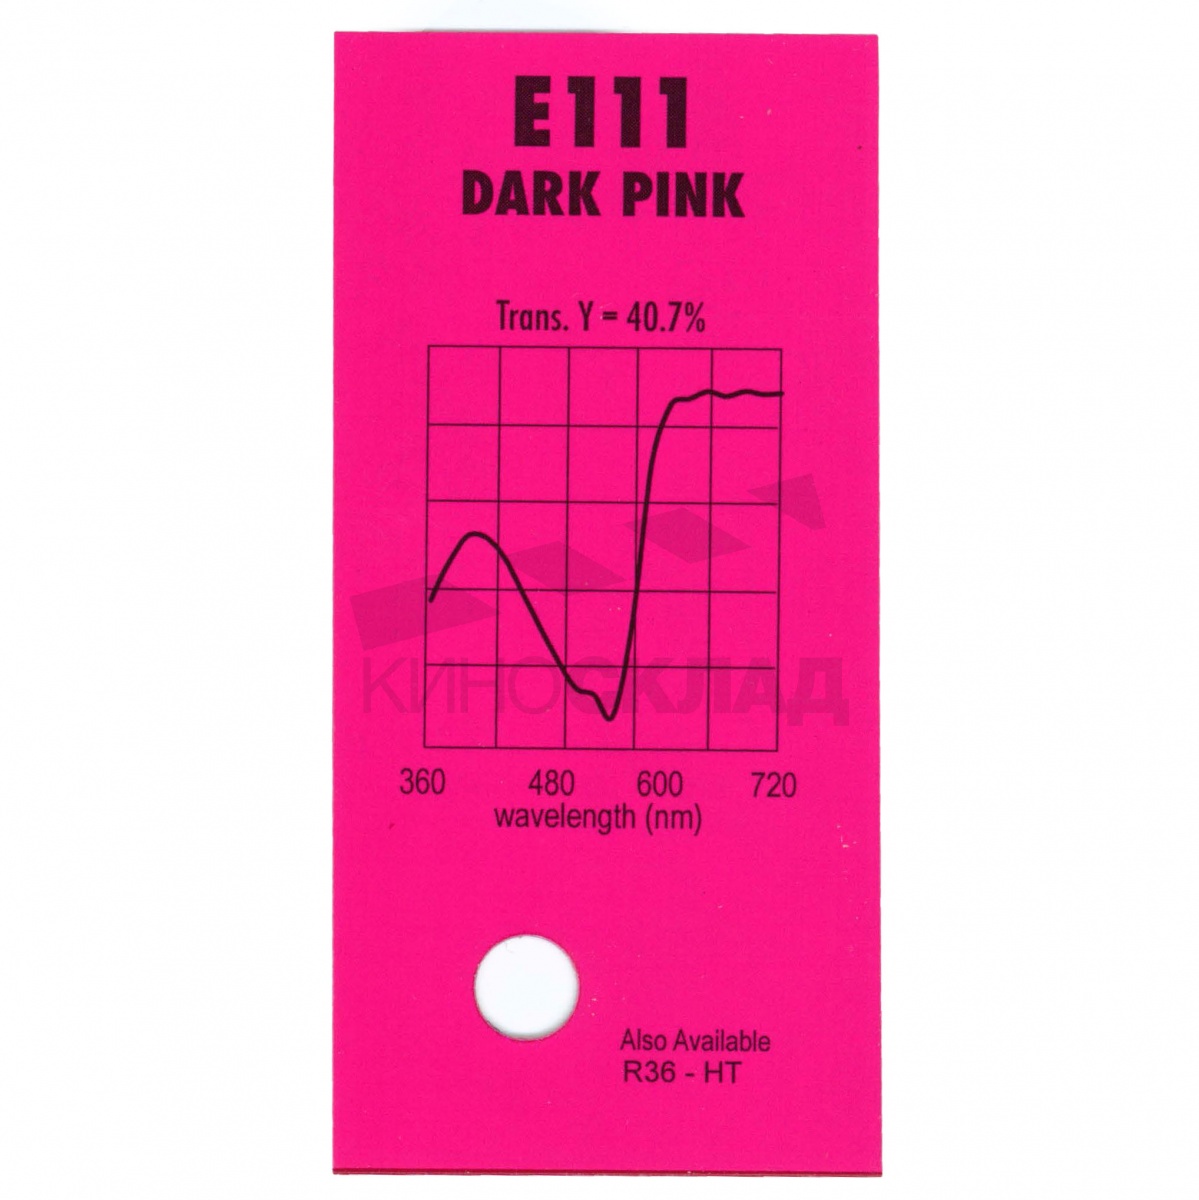 Детальная картинка товара LEE Filters # 111 Dark Pink в магазине Музыкальная Тема